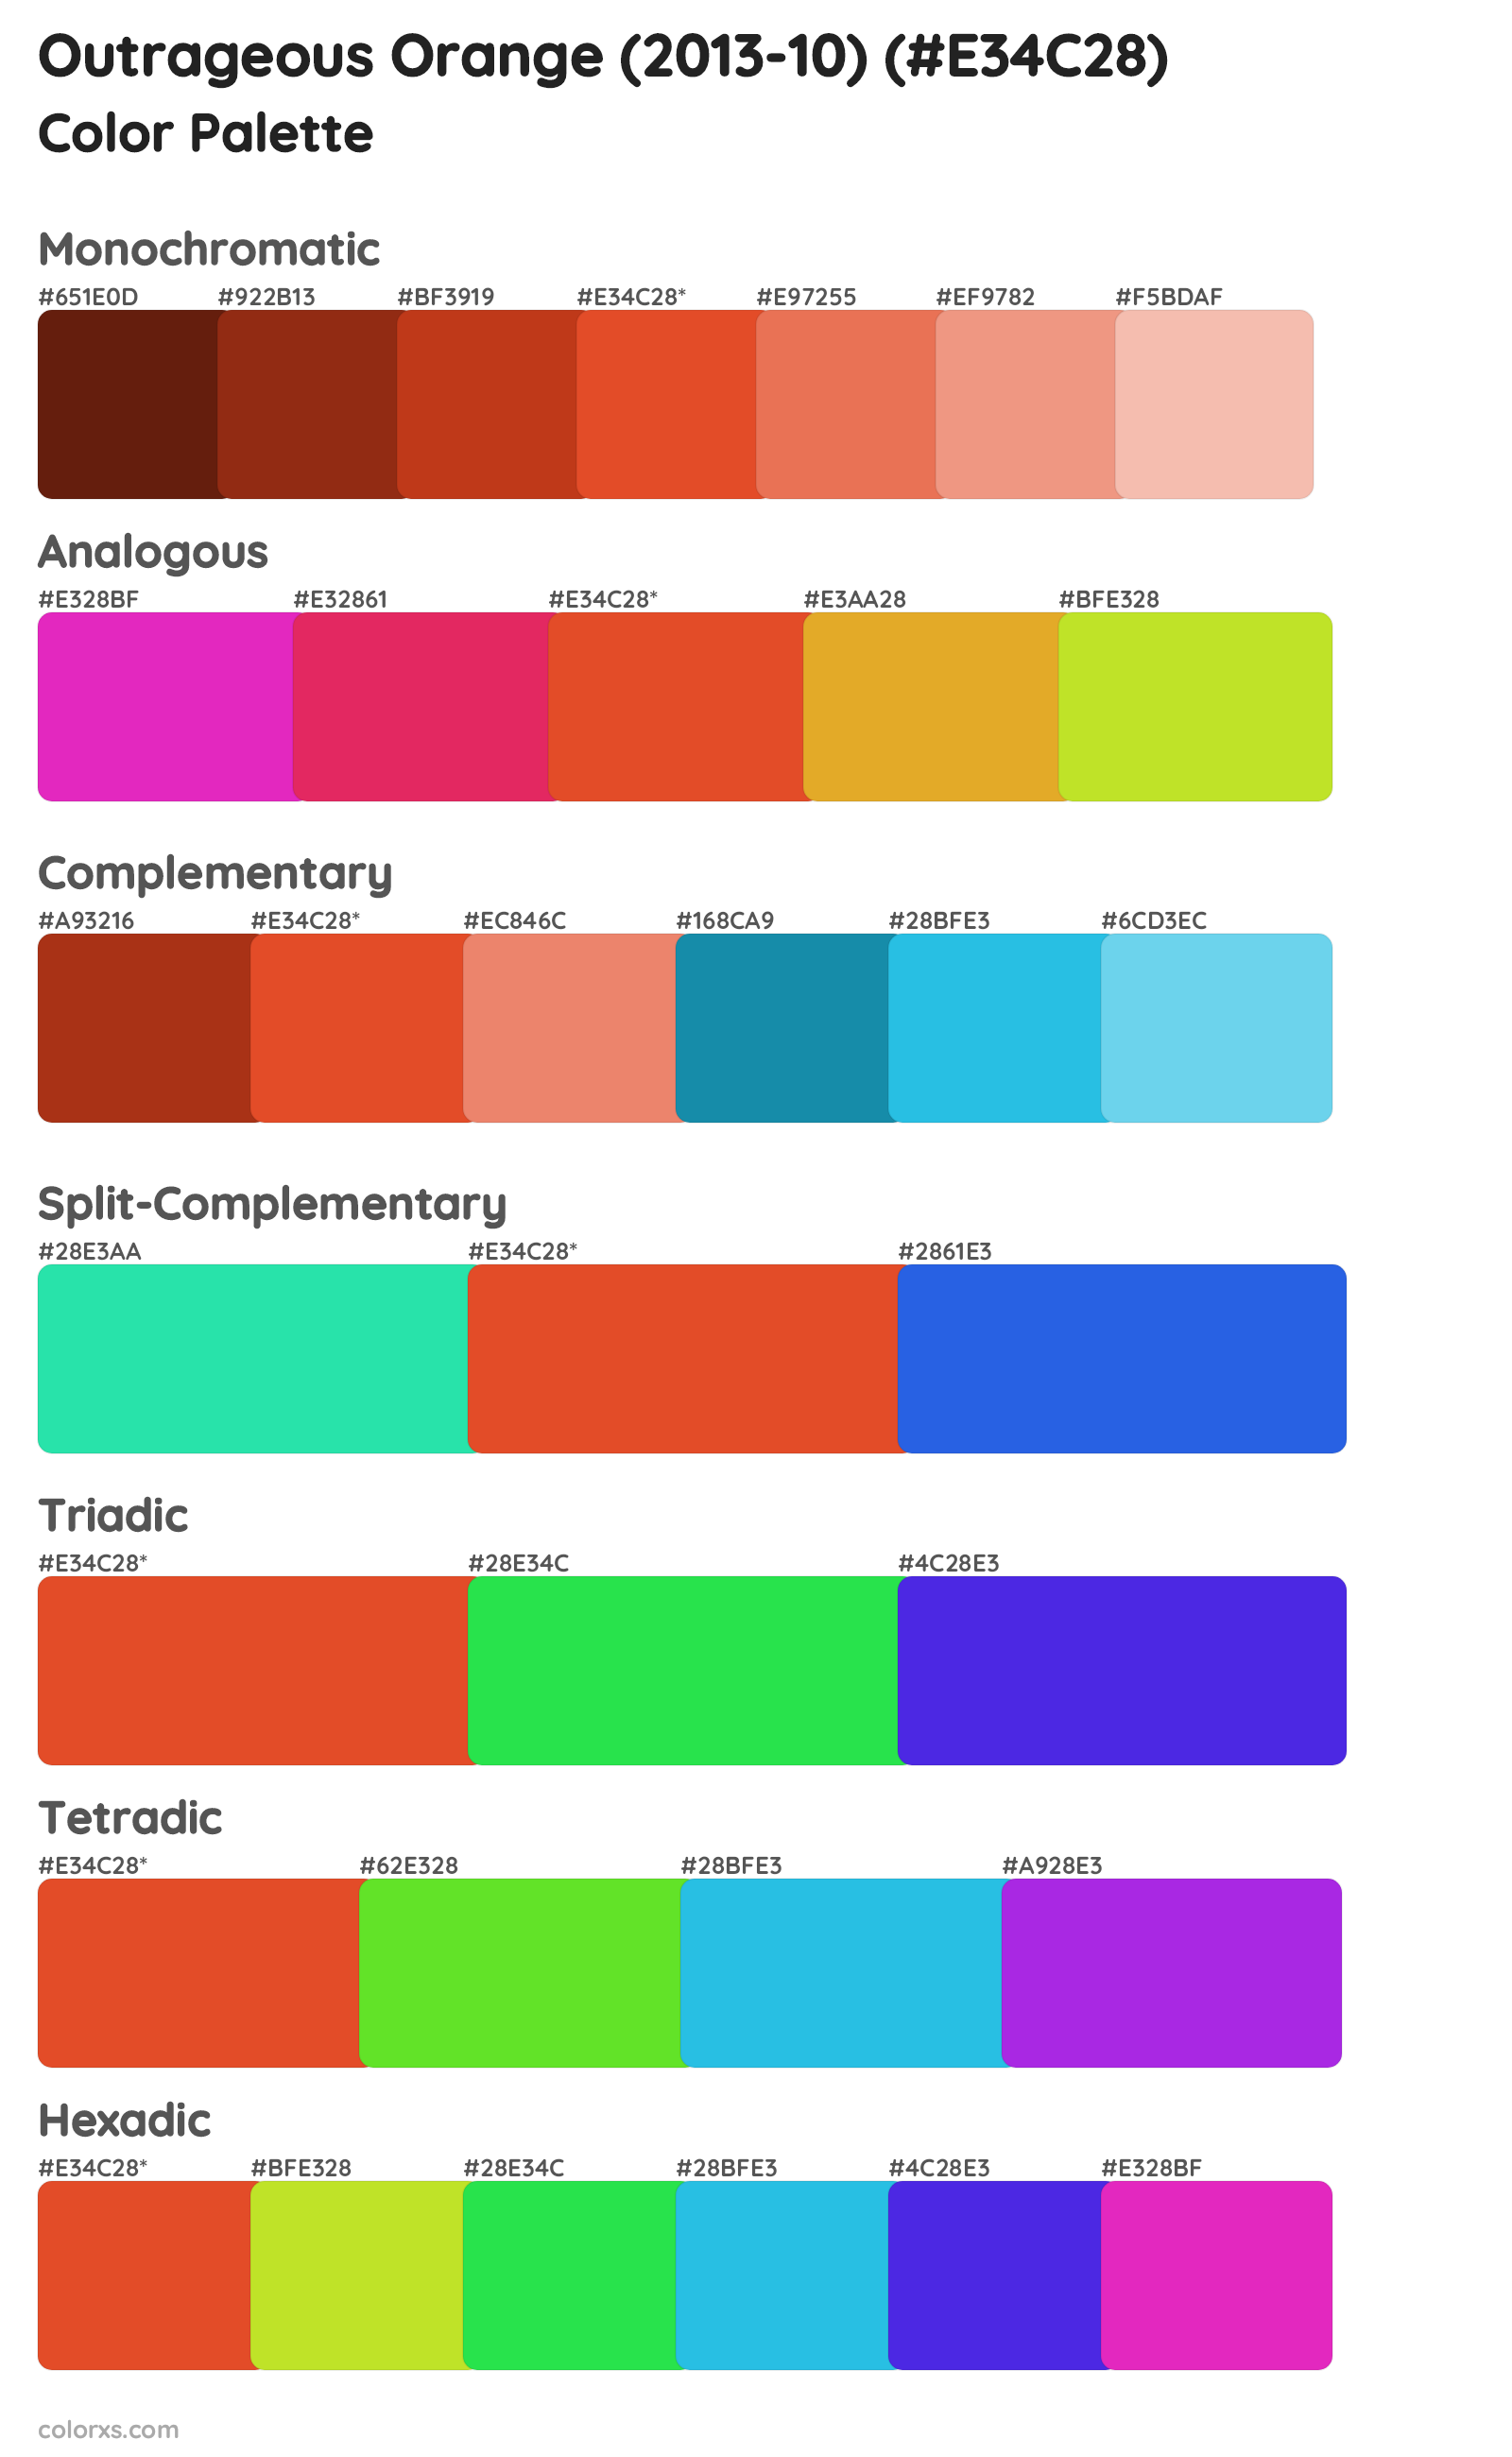 Outrageous Orange (2013-10) Color Scheme Palettes